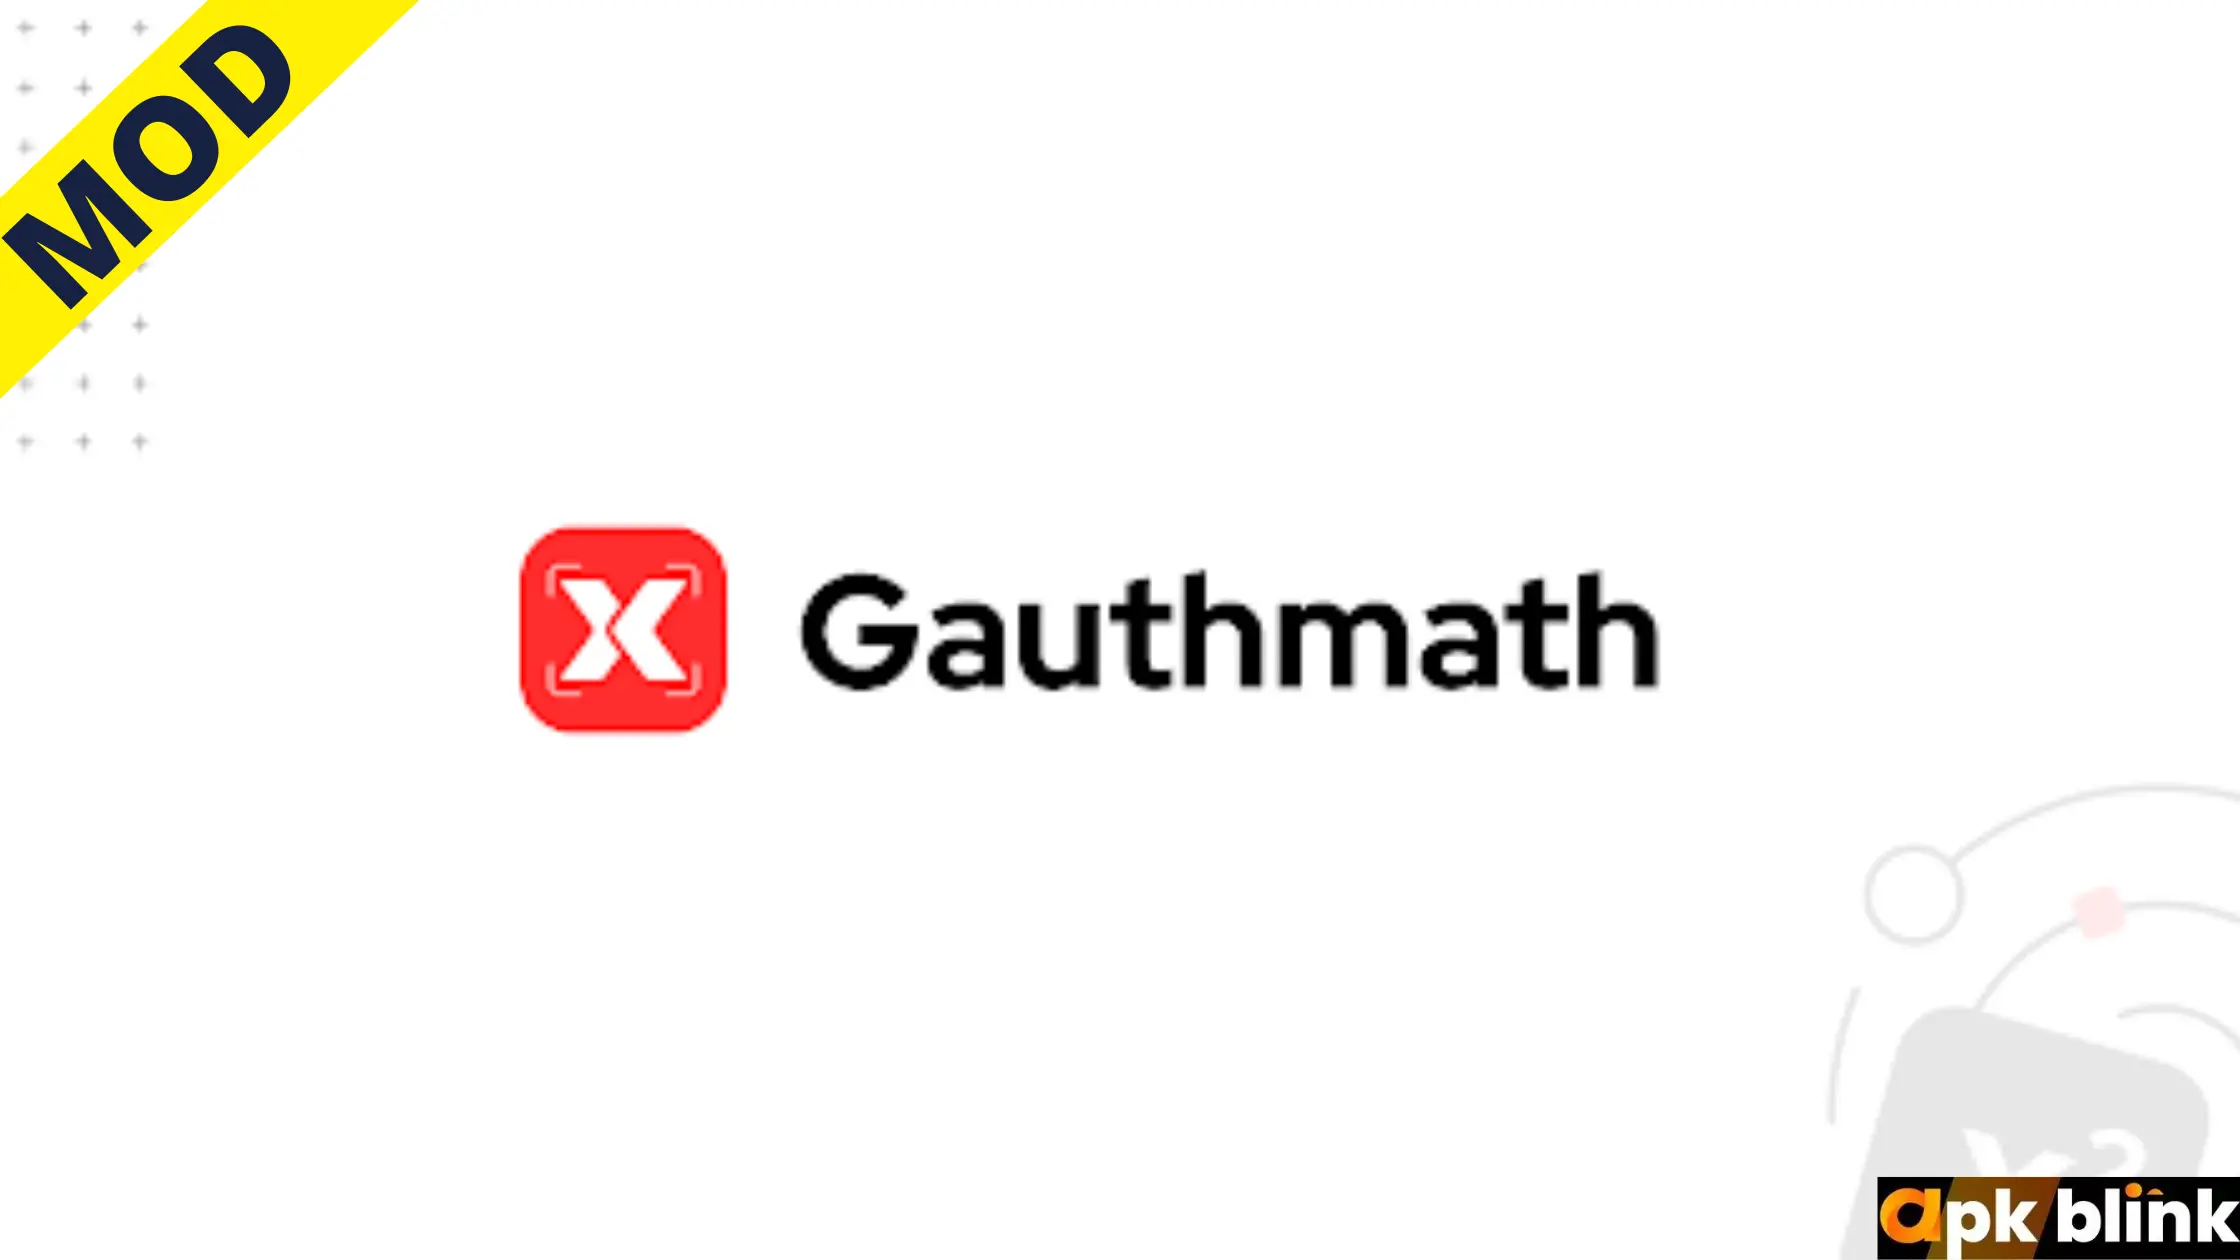 Gauthmath Mod APK